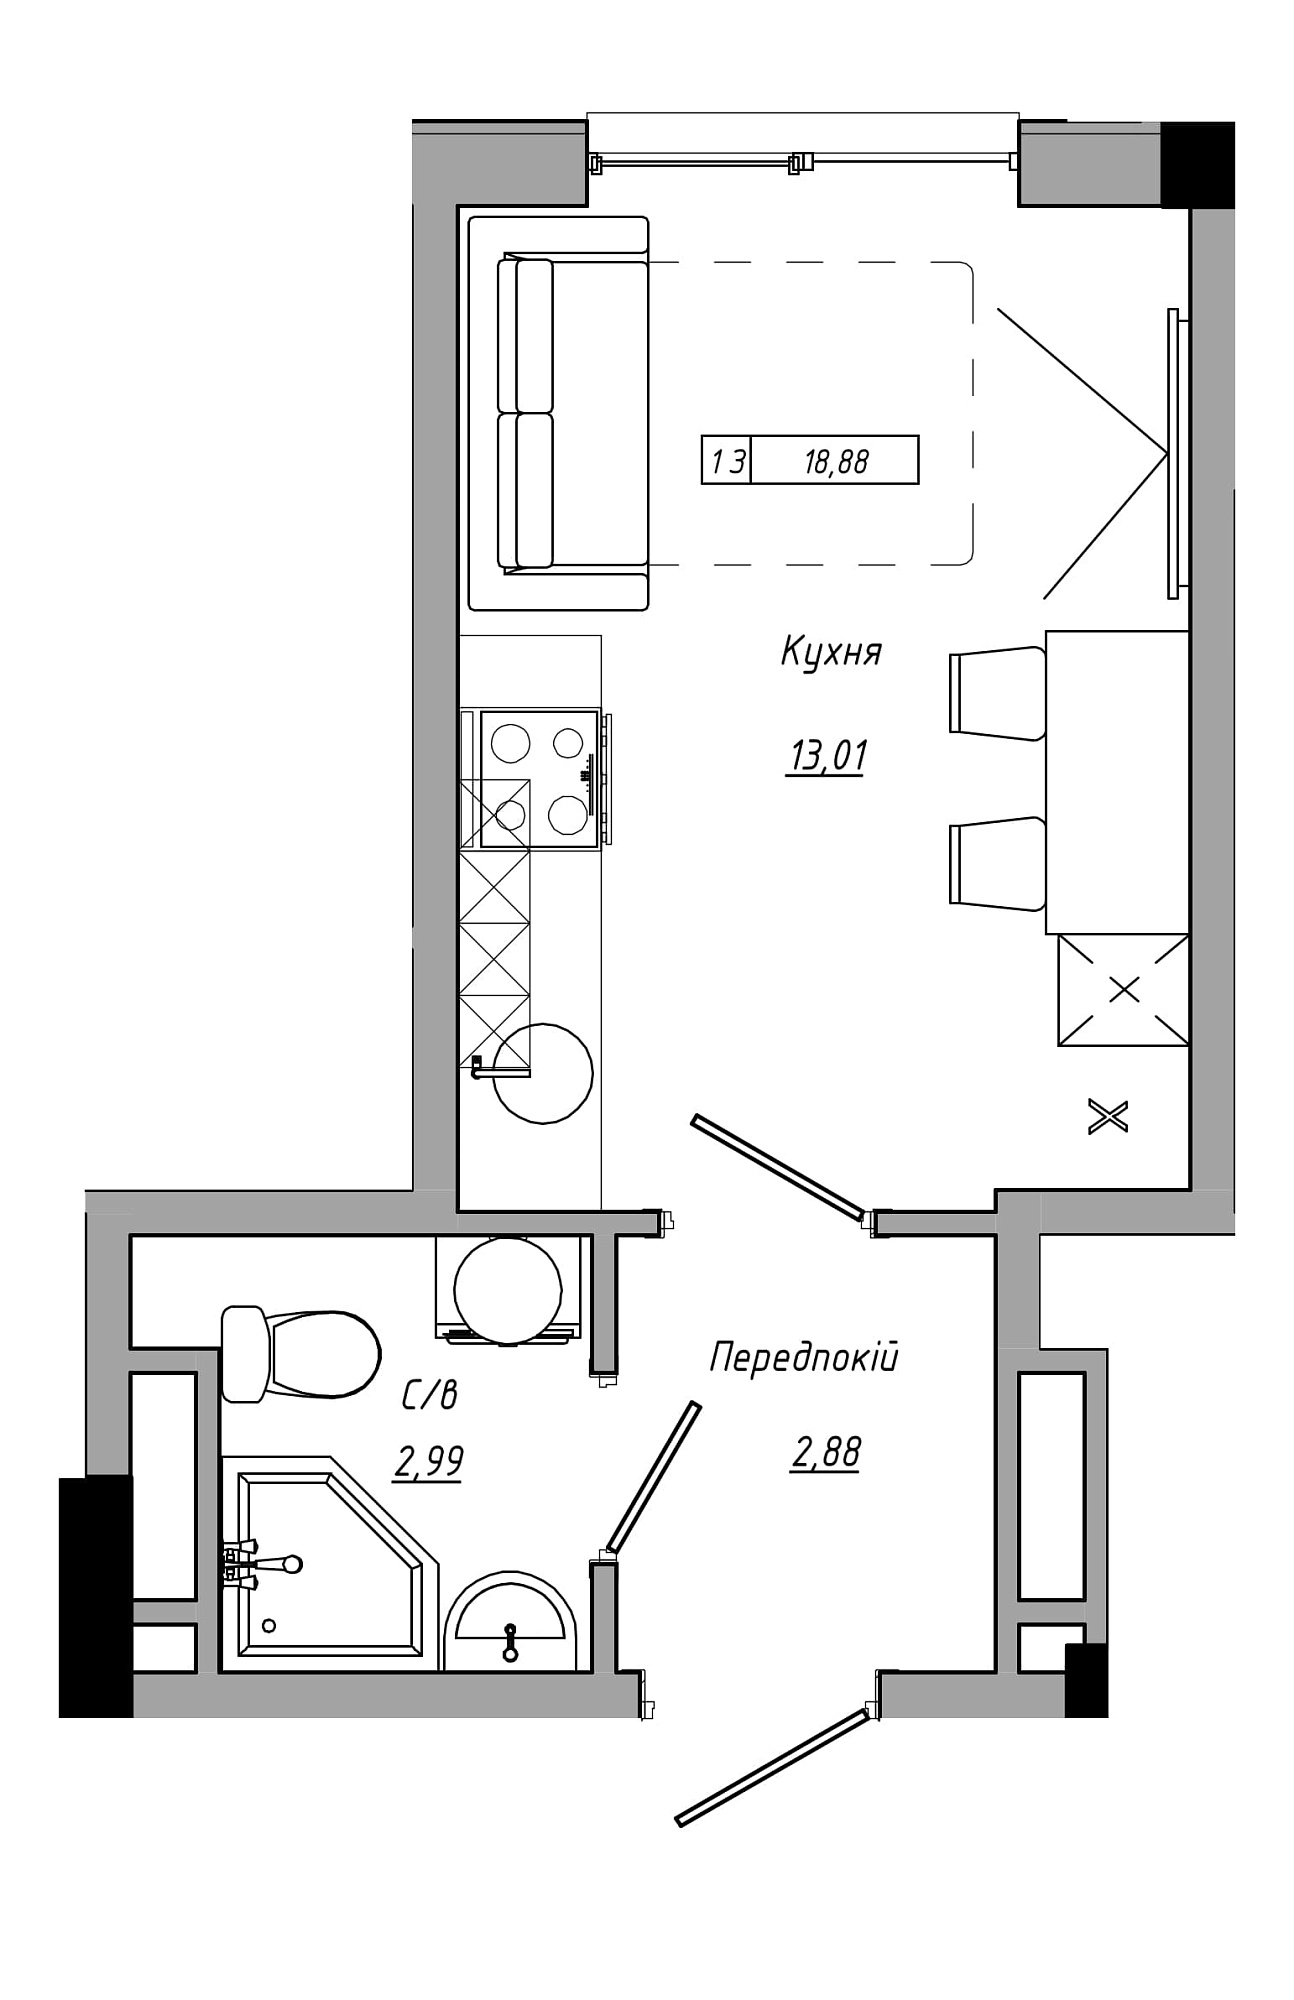 Планування Smart-квартира площею 18.88м2, AB-21-05/00011.